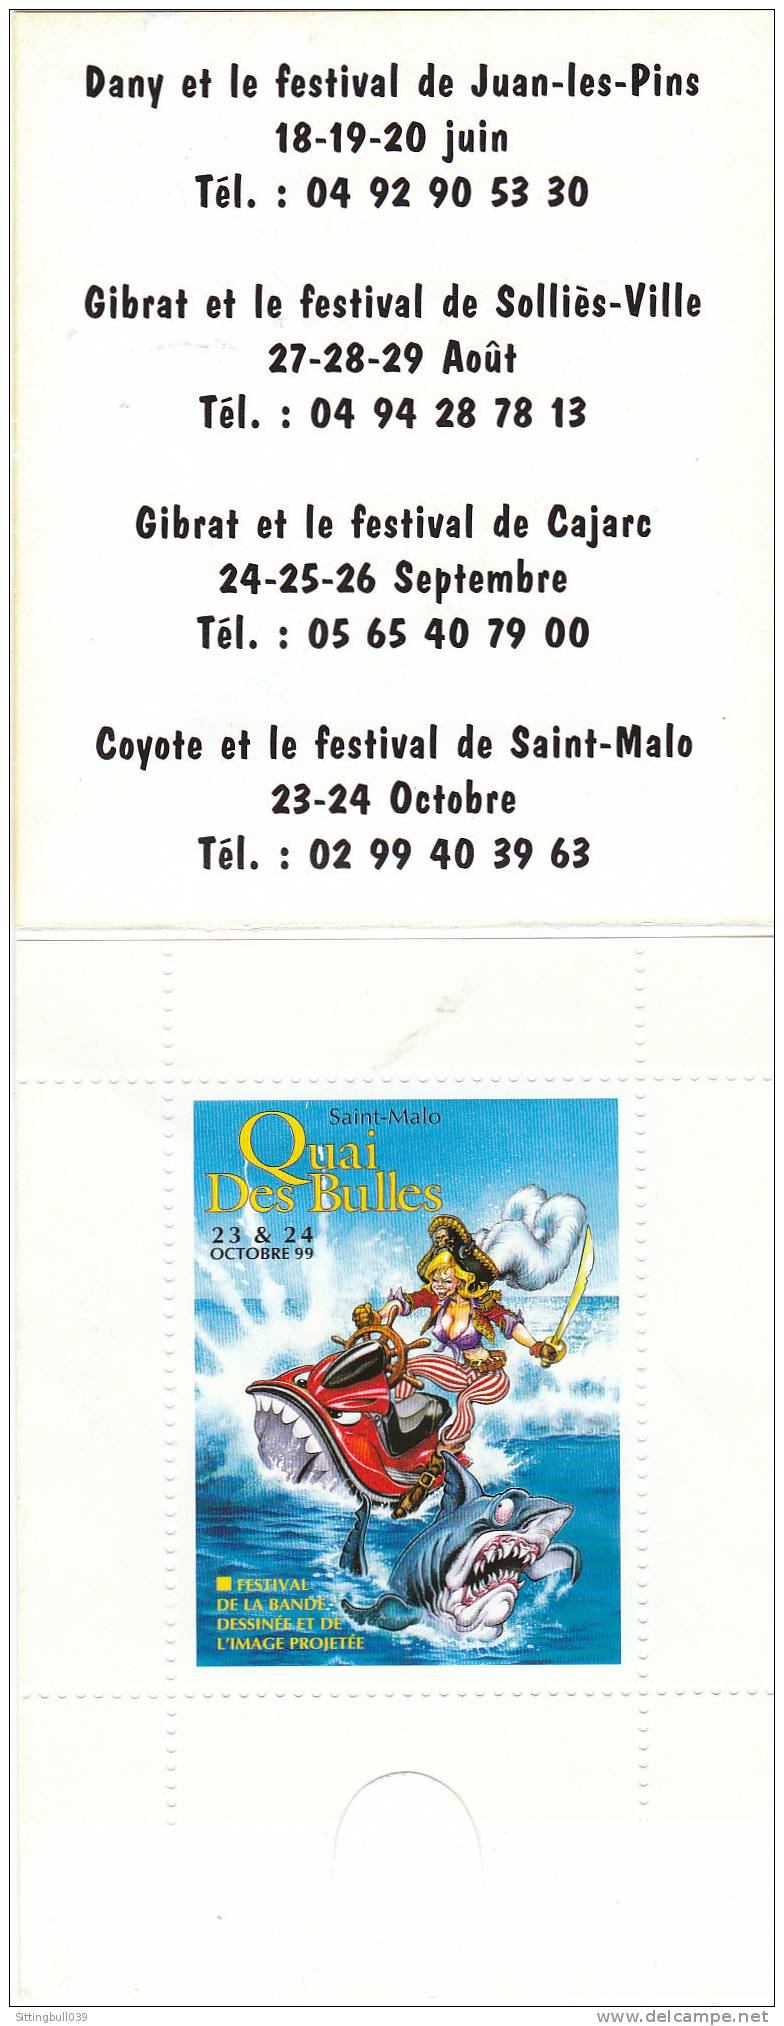 COYOTE. Carnet Timbre Vignette Coyote Pour Festival BD SAINT-MALO 1999 Avec Dessin De JUILLARD. TL 1000 Ntés. LDC I.MAG. - Advertisement